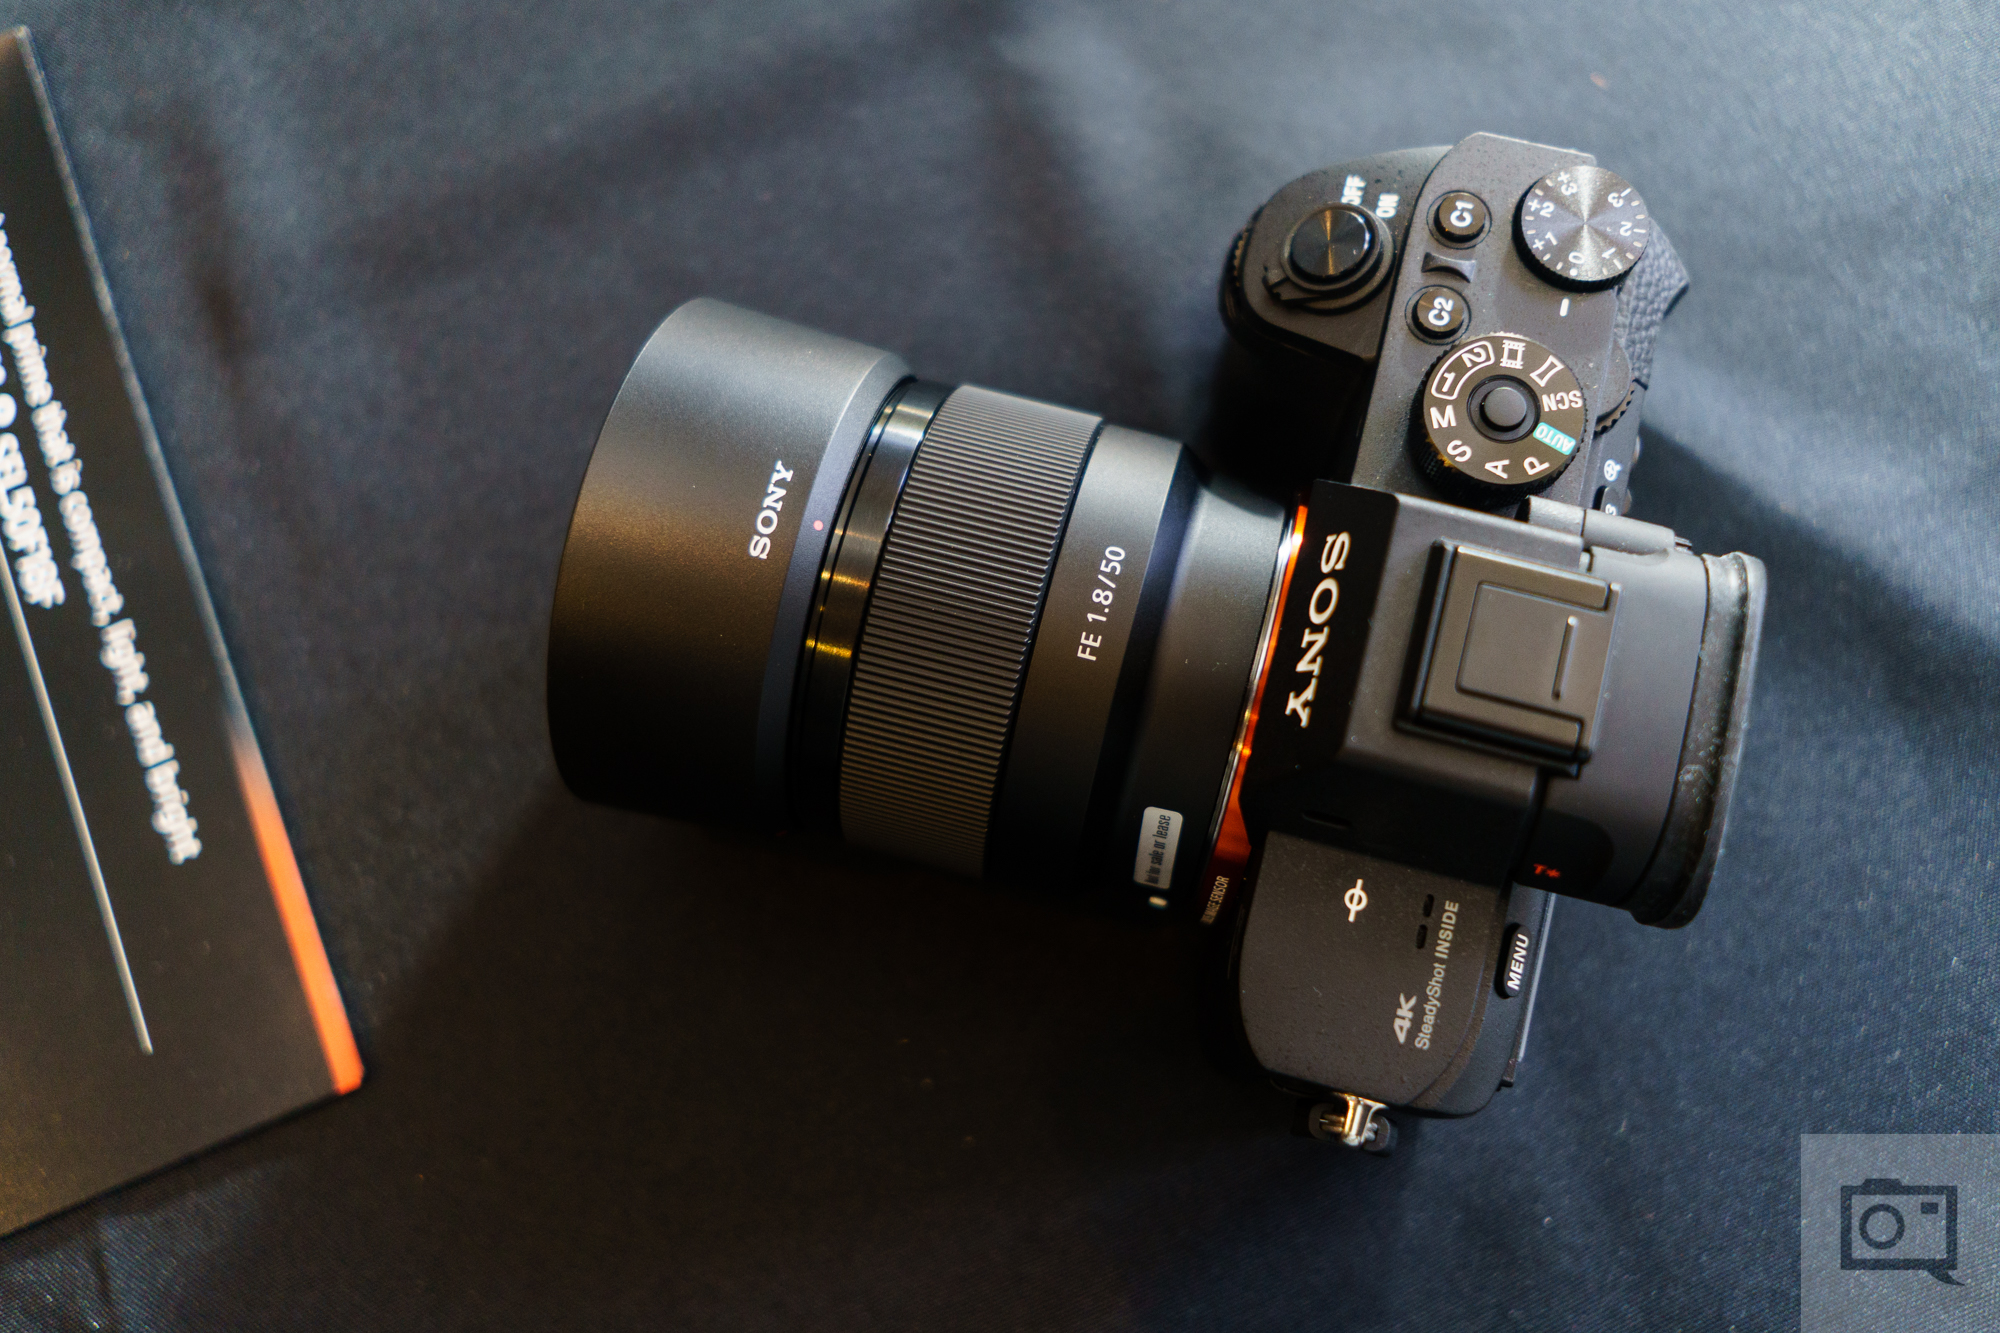 Sony FE 50mm f/1.8 Prime Lens